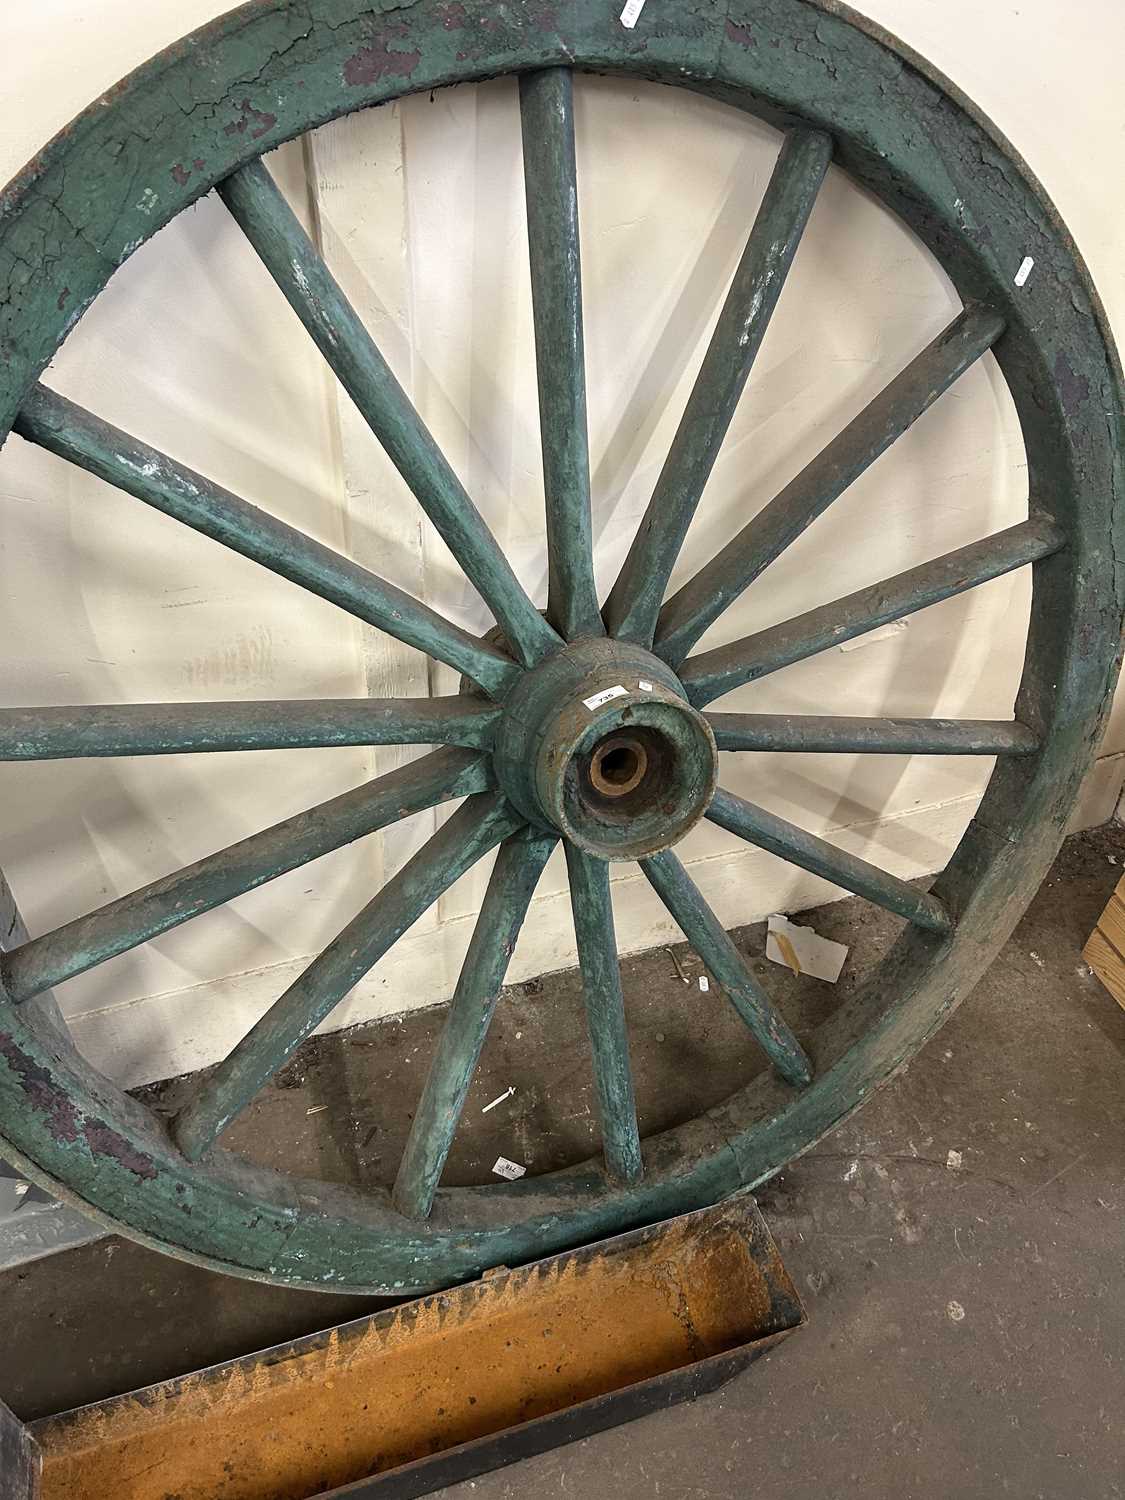 A cart wheel